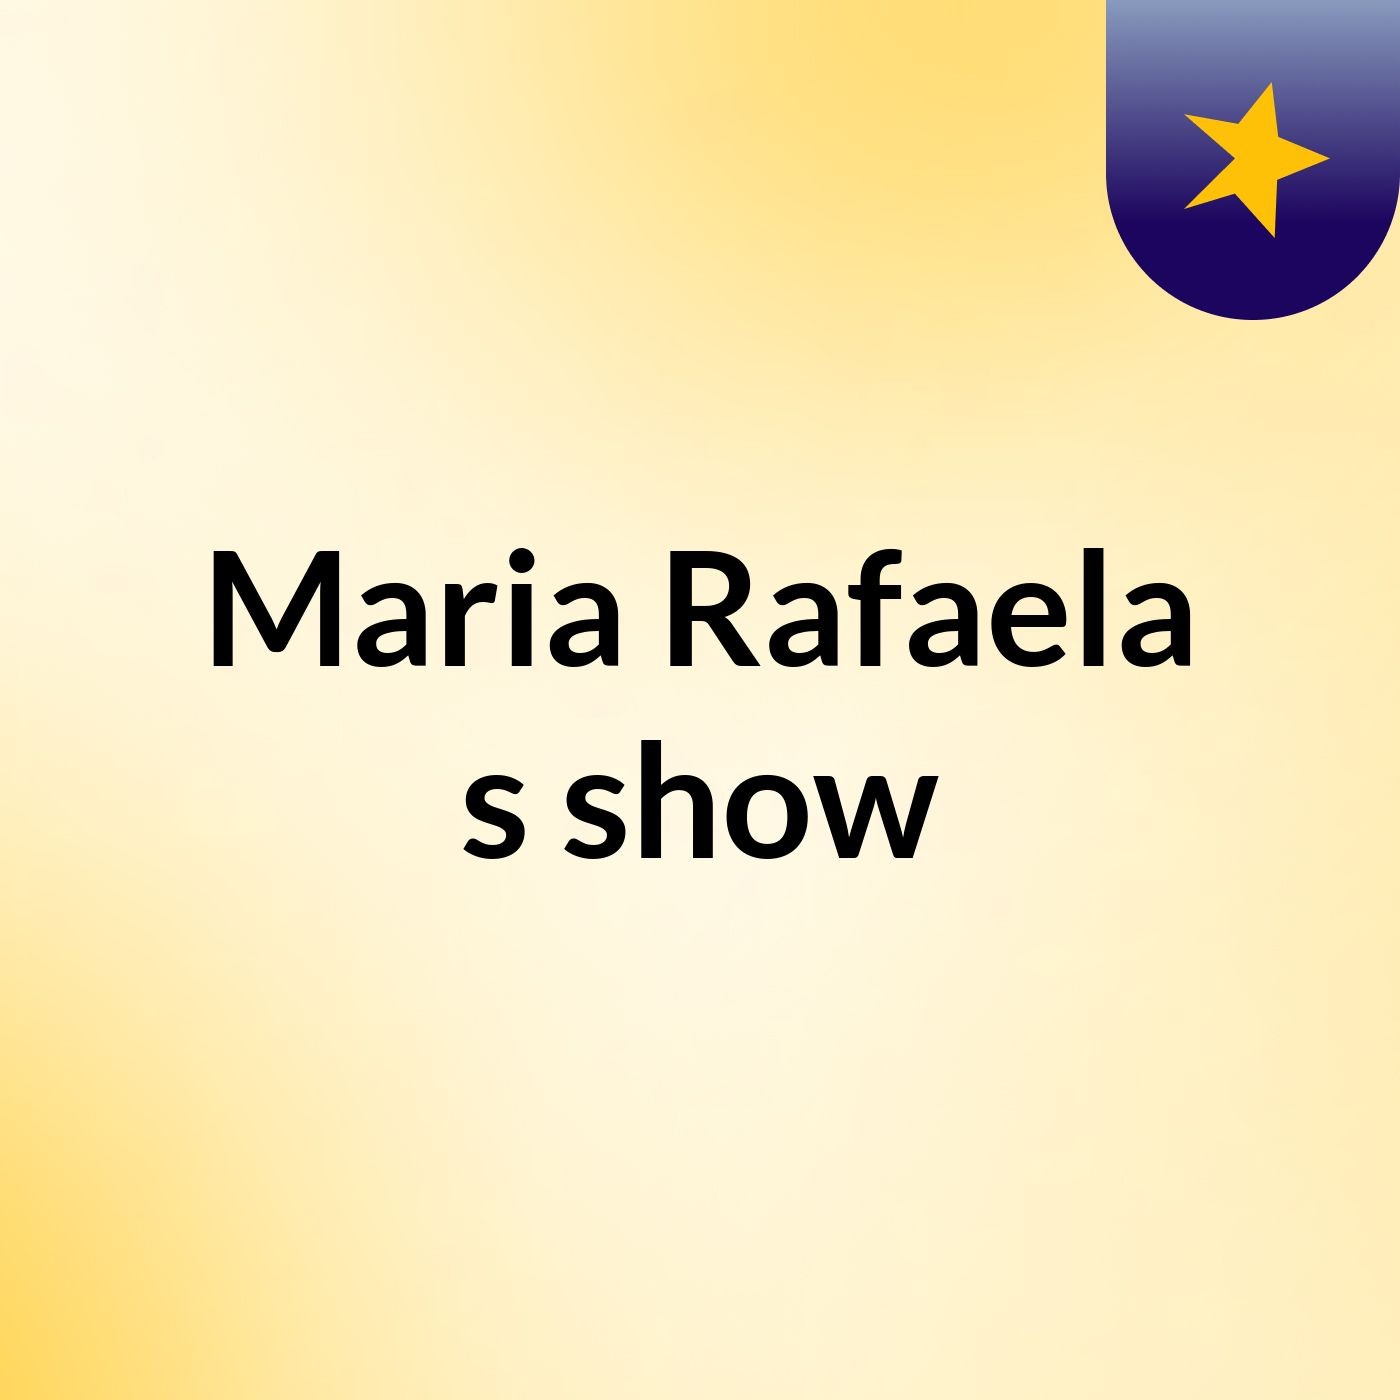 Maria Rafaela's show